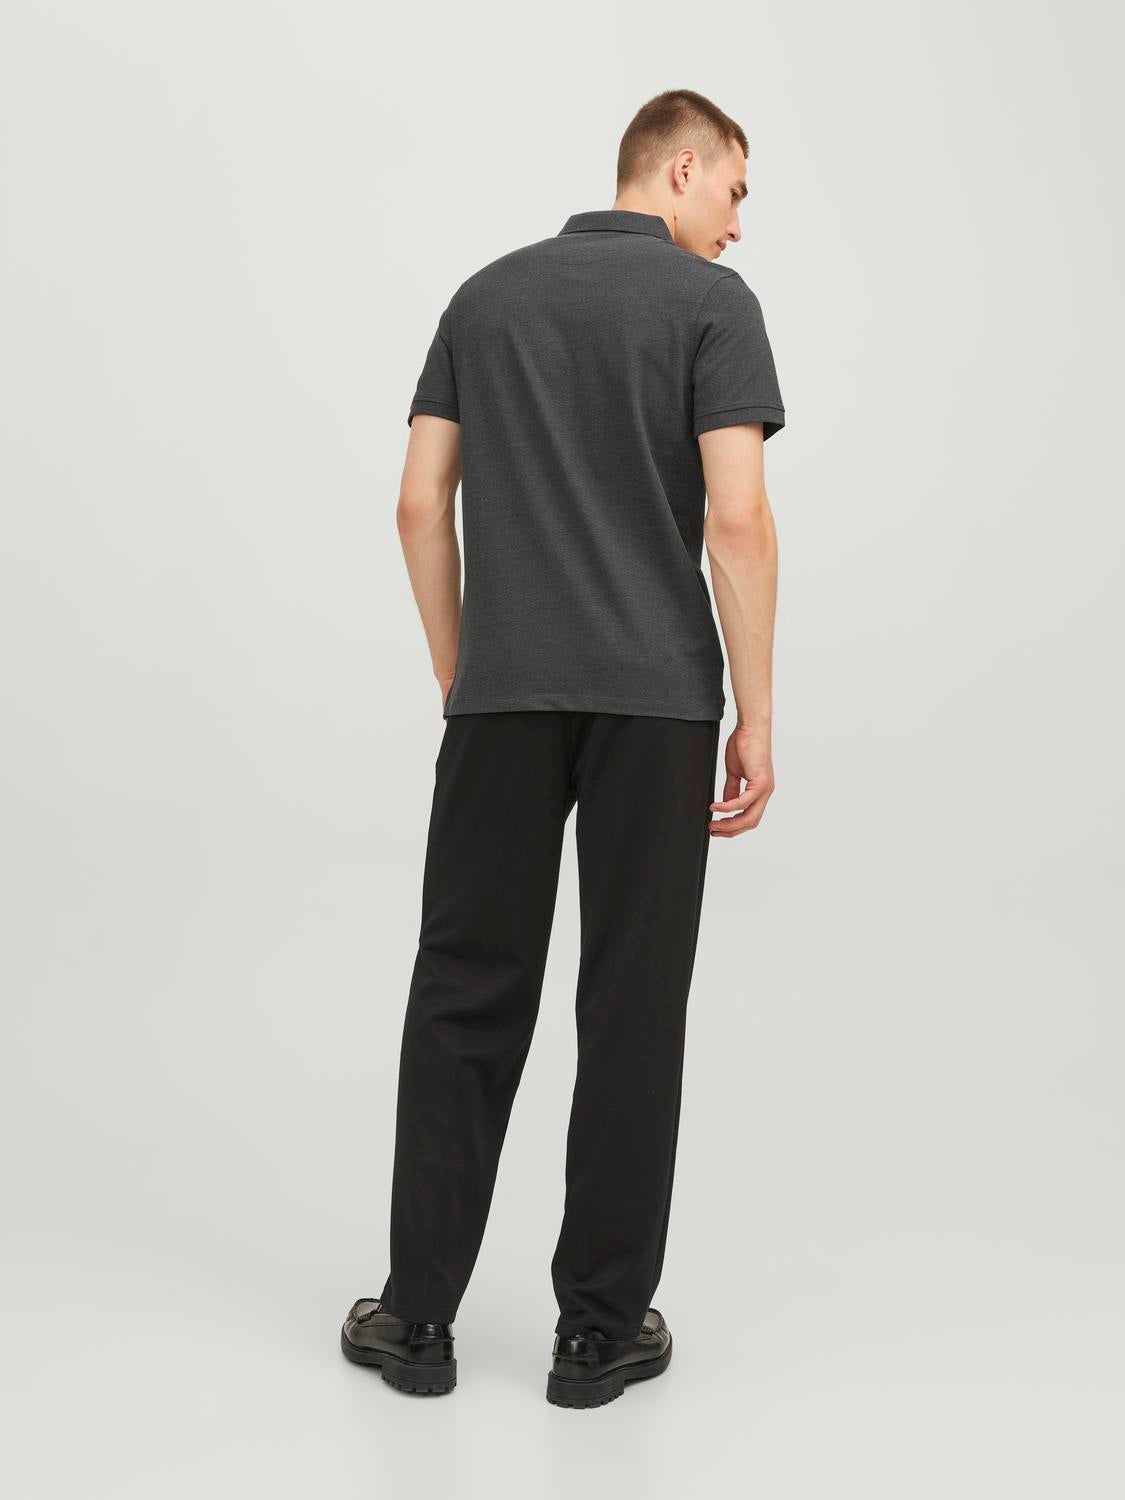 Buy Grey Trousers & Pants for Men by VAN HEUSEN Online | Ajio.com